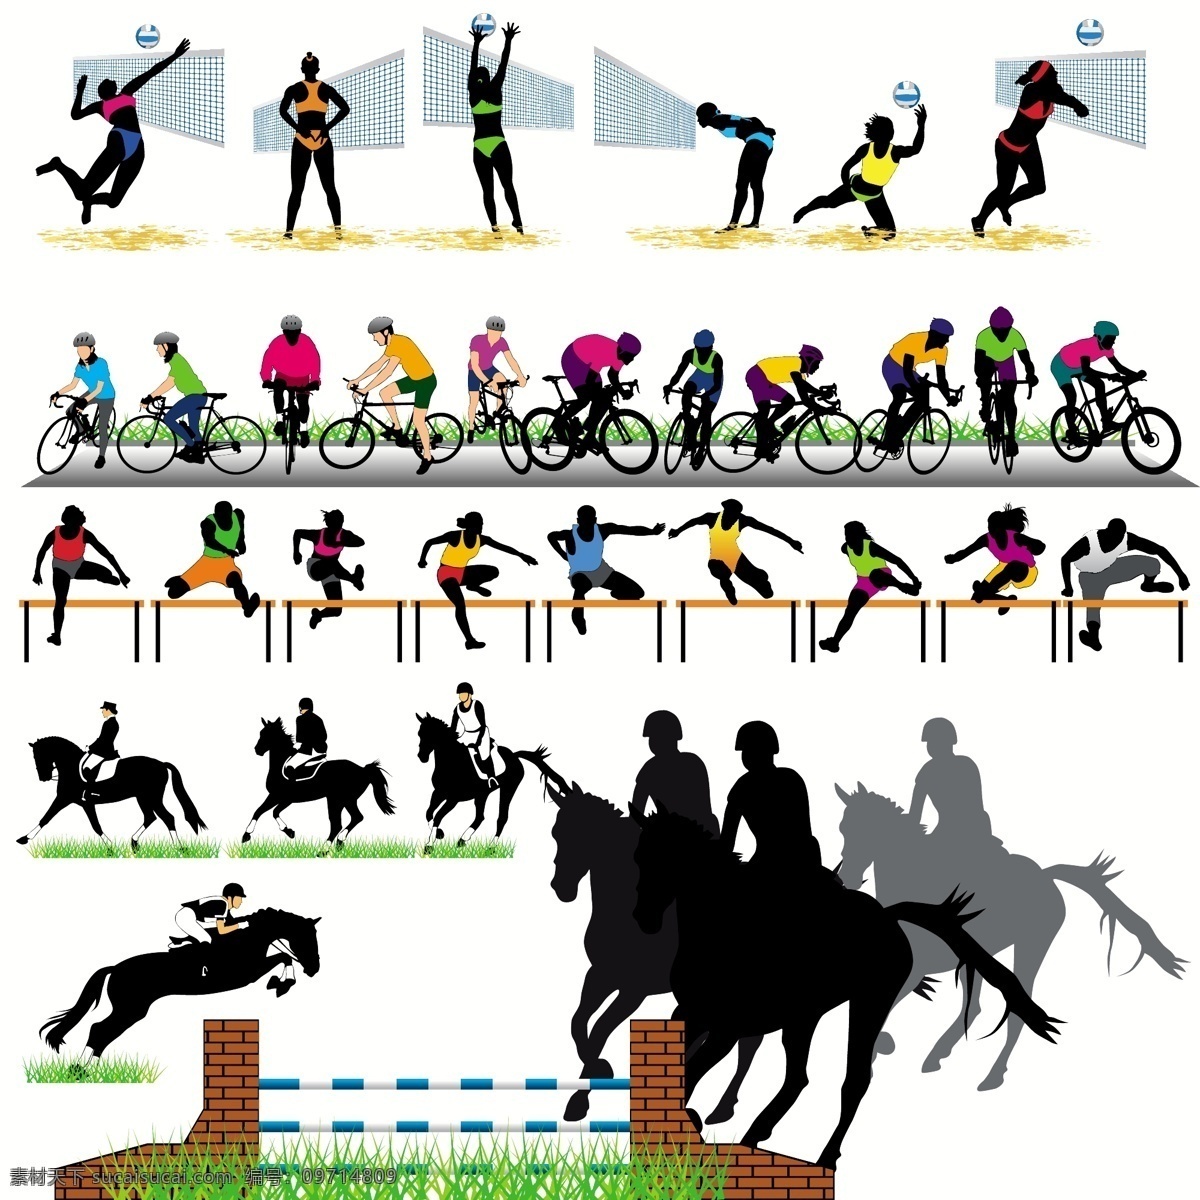 马术 自行车 跨栏 排球 运动员 剪影 体育 比赛 运动 骏马 奔驰 动作 姿势 矢量 体育运动 文化艺术